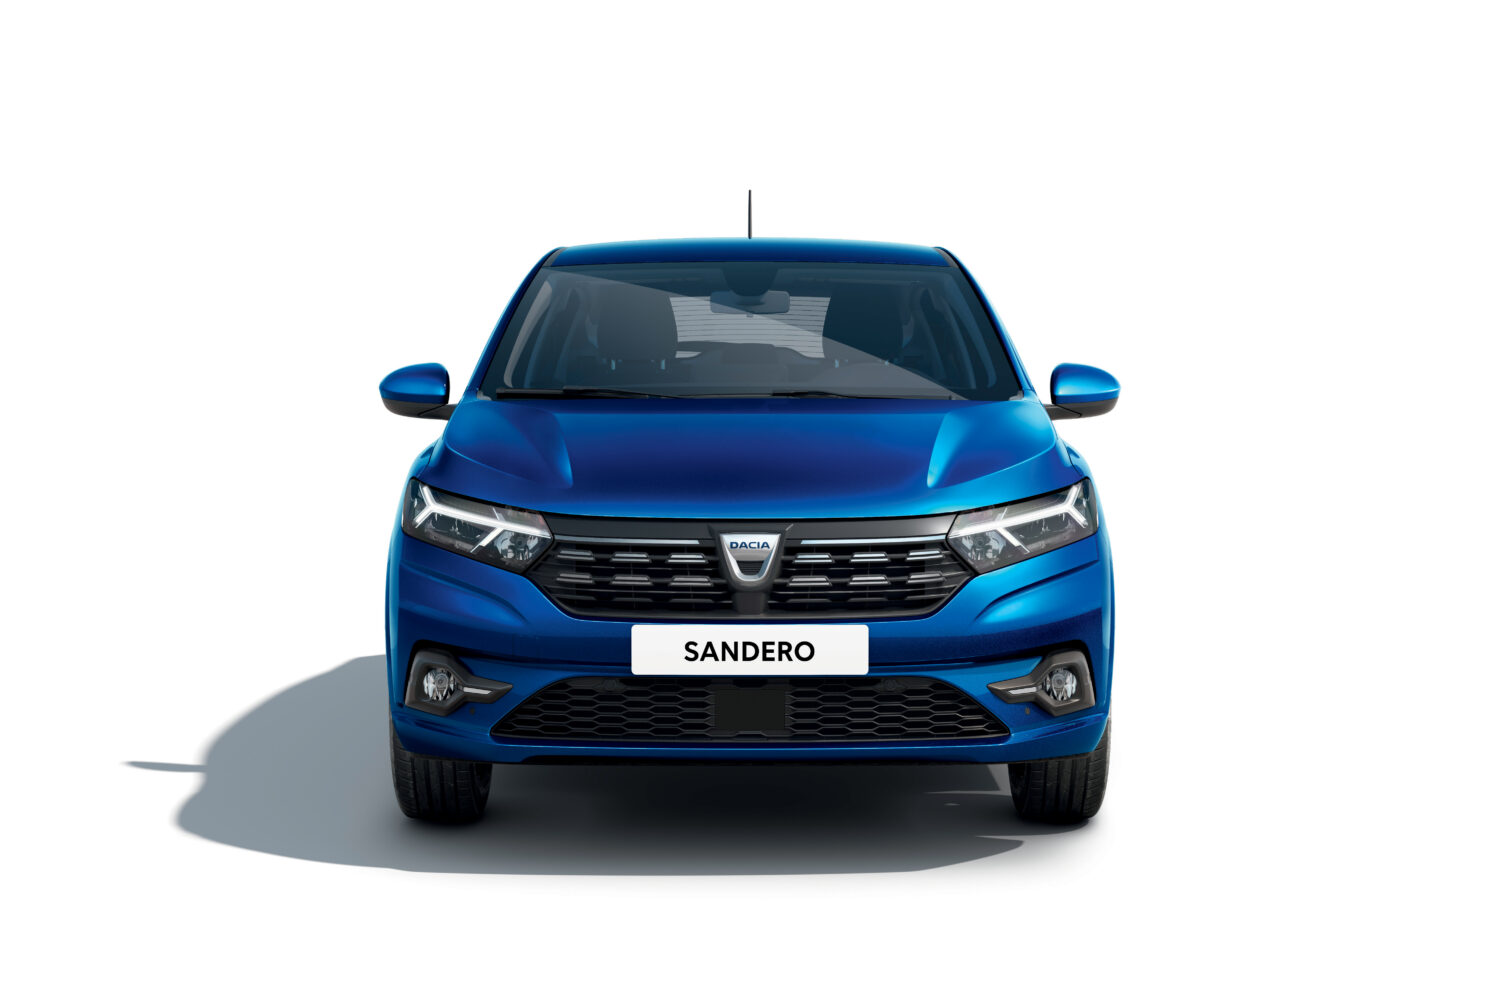 2020 - New Dacia SANDERO